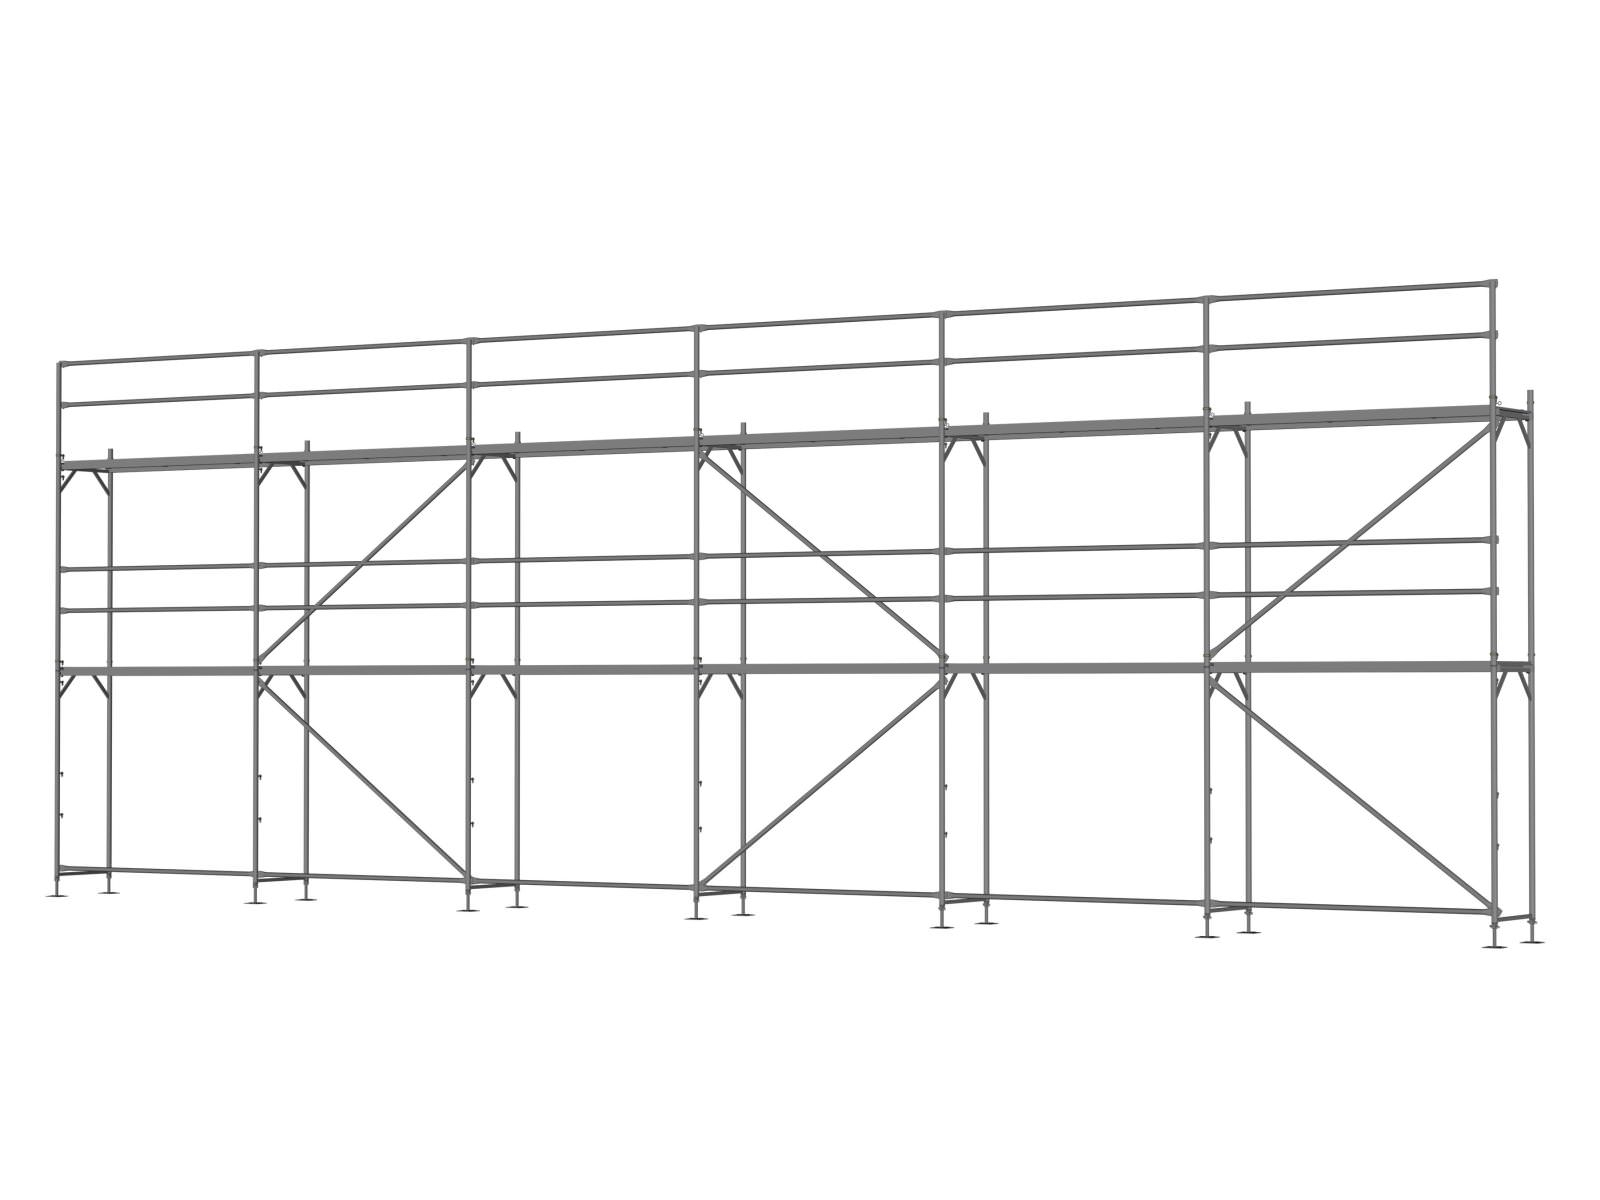 Alu Traufseitengerüst 90 qm - 2,5 m Felder - 15 m lang - 6 m Arbeitshöhe - Basis-Gerüst